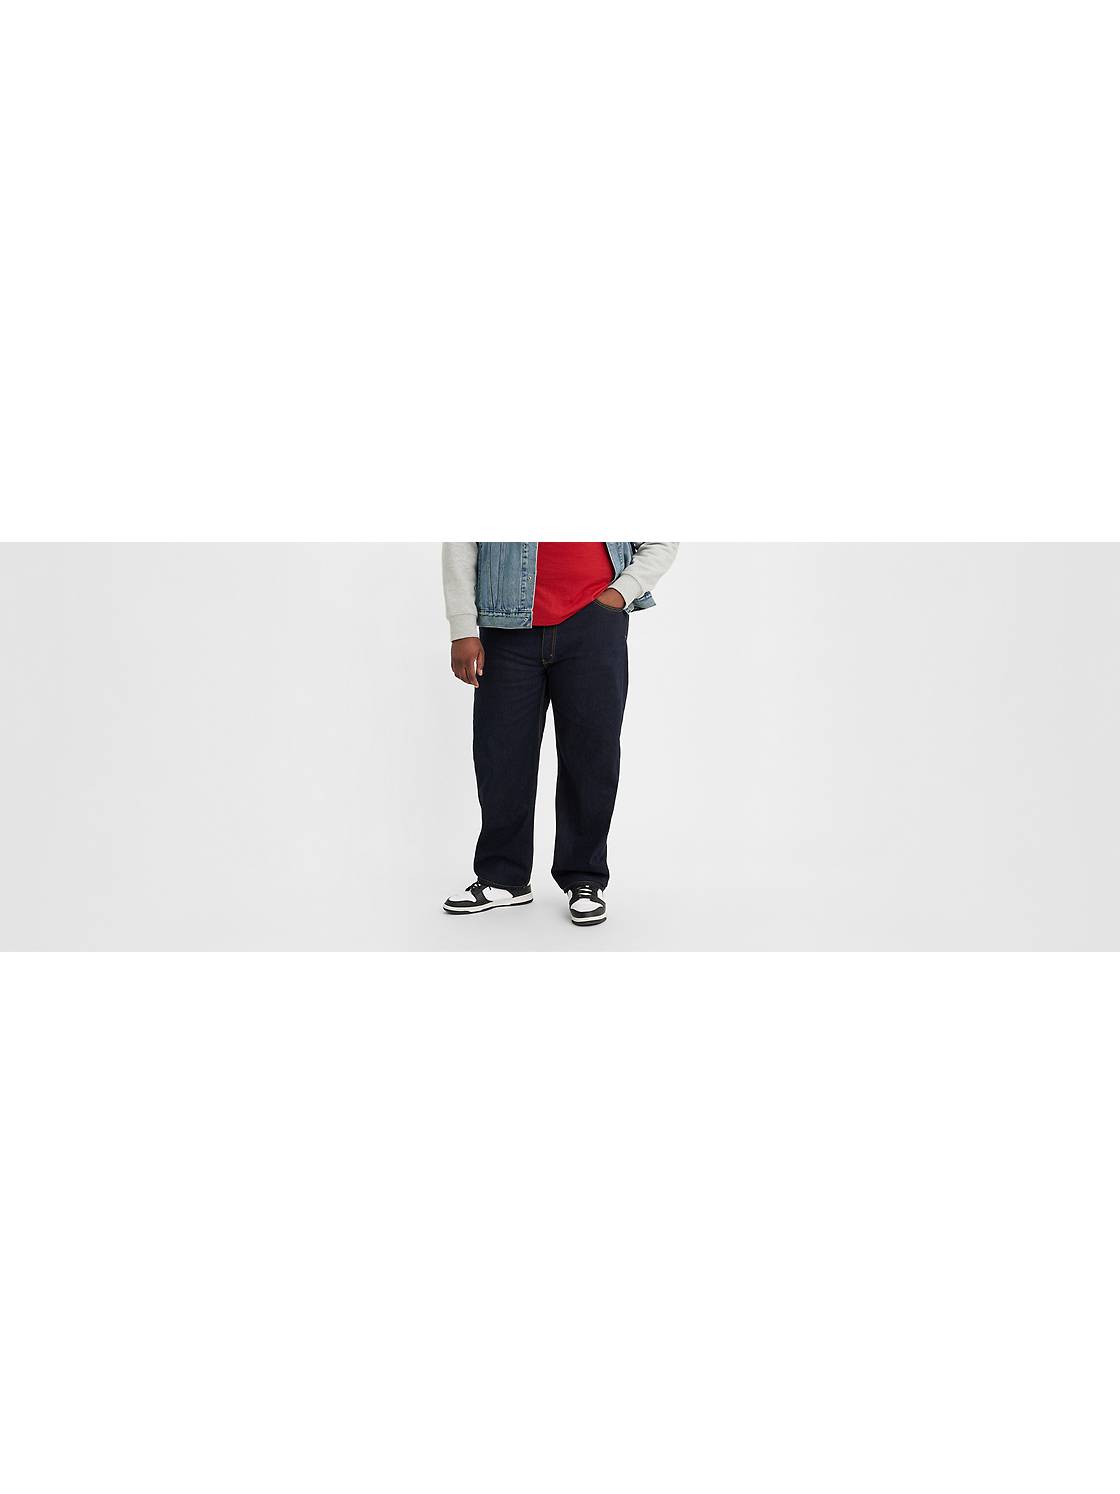 Big & Tall Jeans: Shop Men's Jeans & Pants Styles | Levi's® US